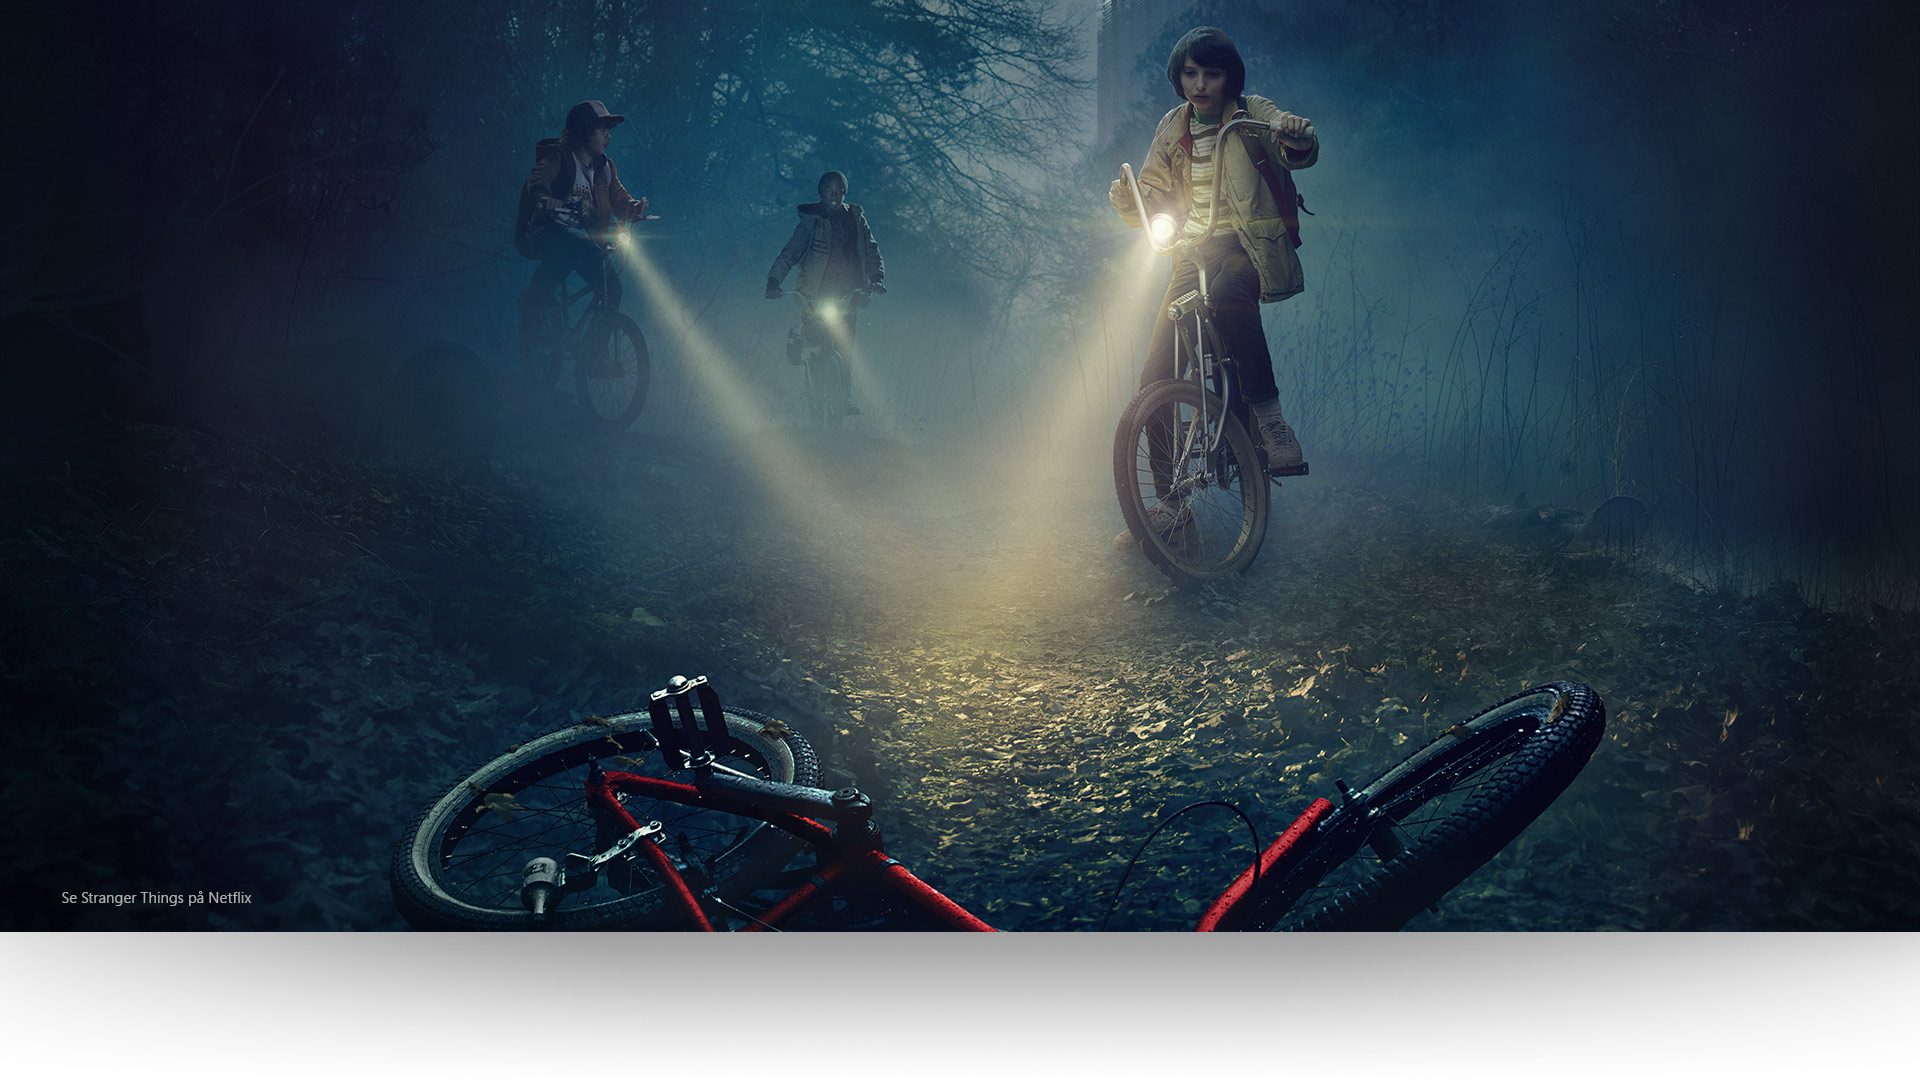 Stranger Things – Dustin, Lucas og Mike retter lyset på en forlatt sykkel på en mørk skogssti. Se Stranger Things på Netflix